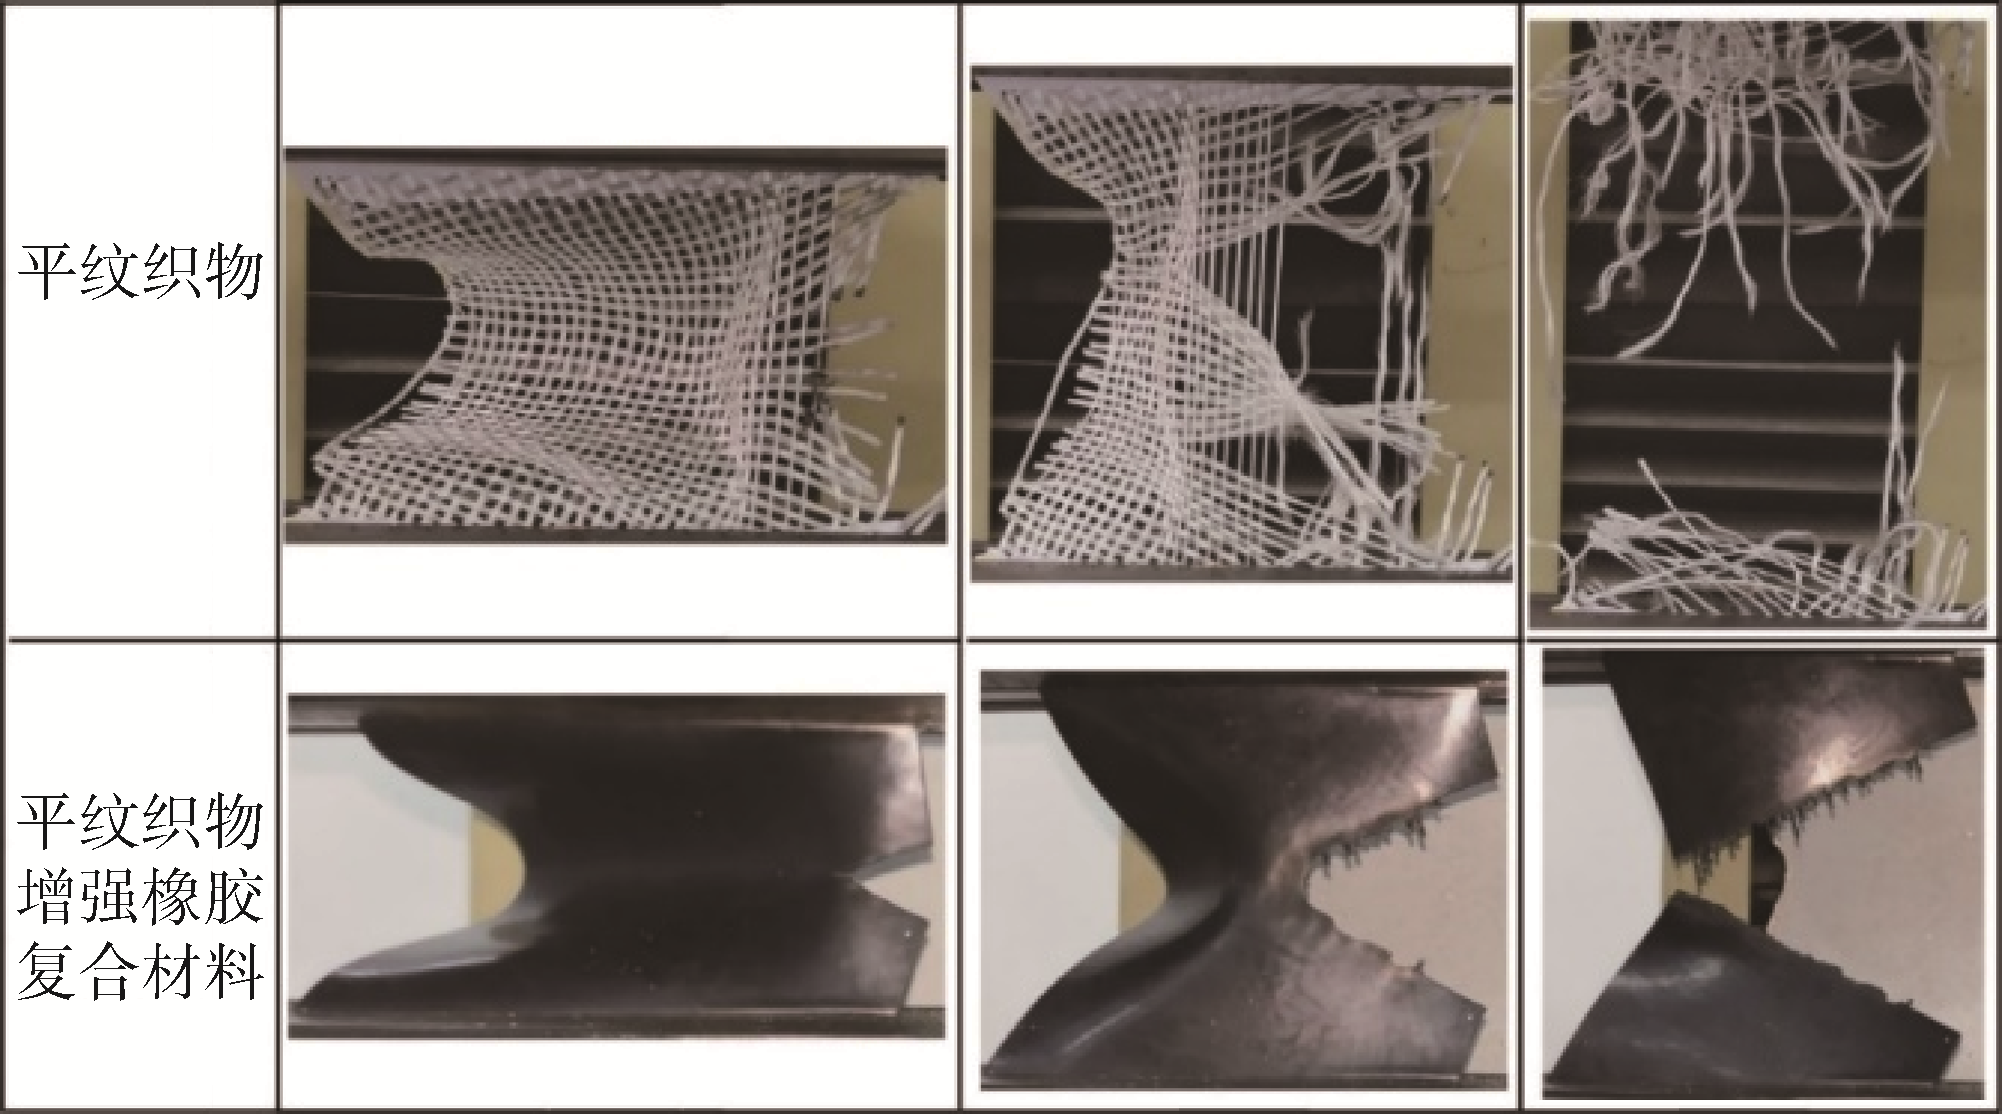 平面三向织物增强橡胶复合材料撕裂性能研究